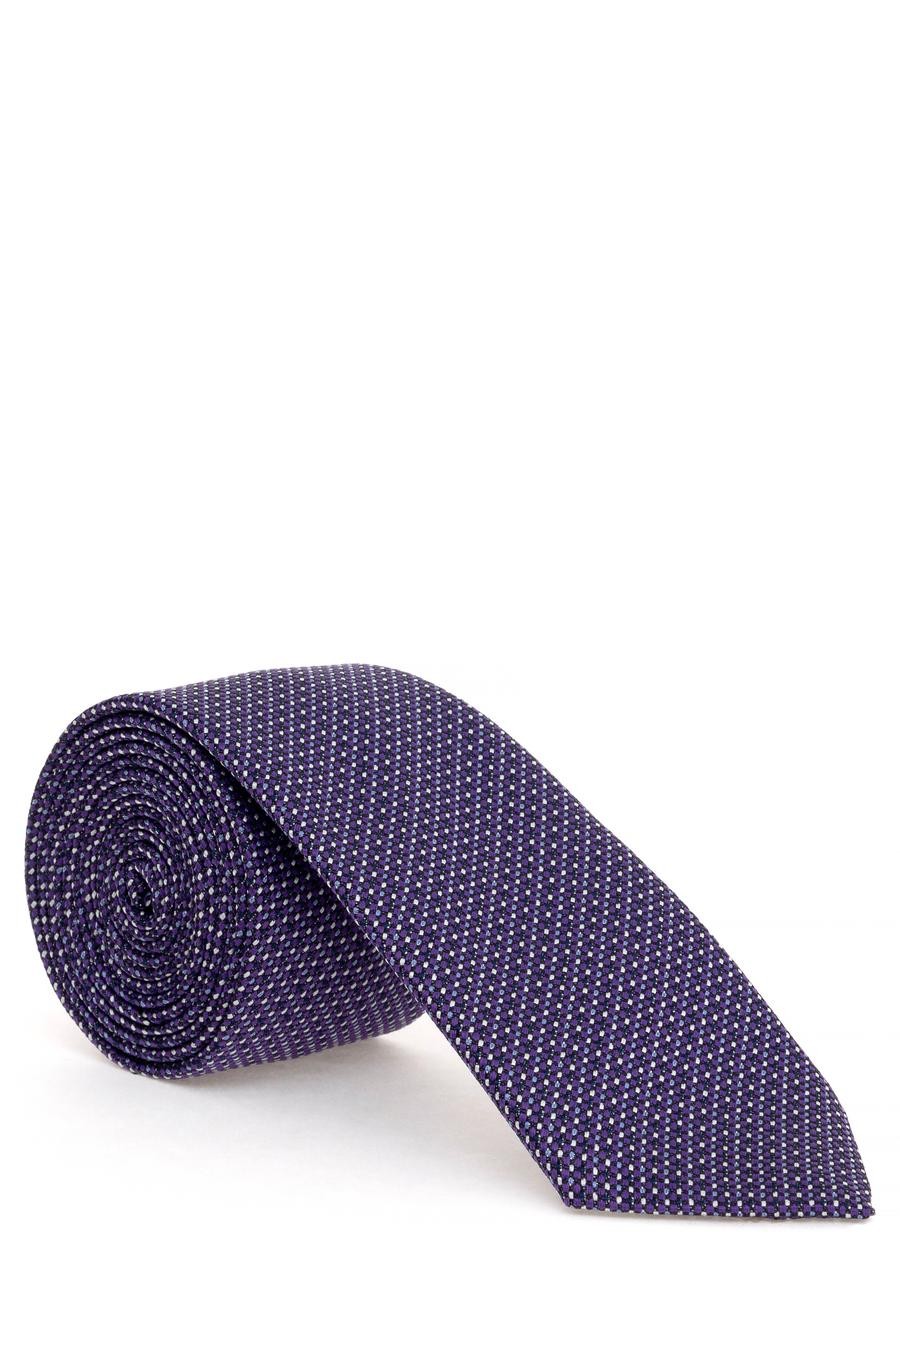 ست دستمال جیب و کراوات  بنفش  استاندارد  مردانه  پیرکاردین